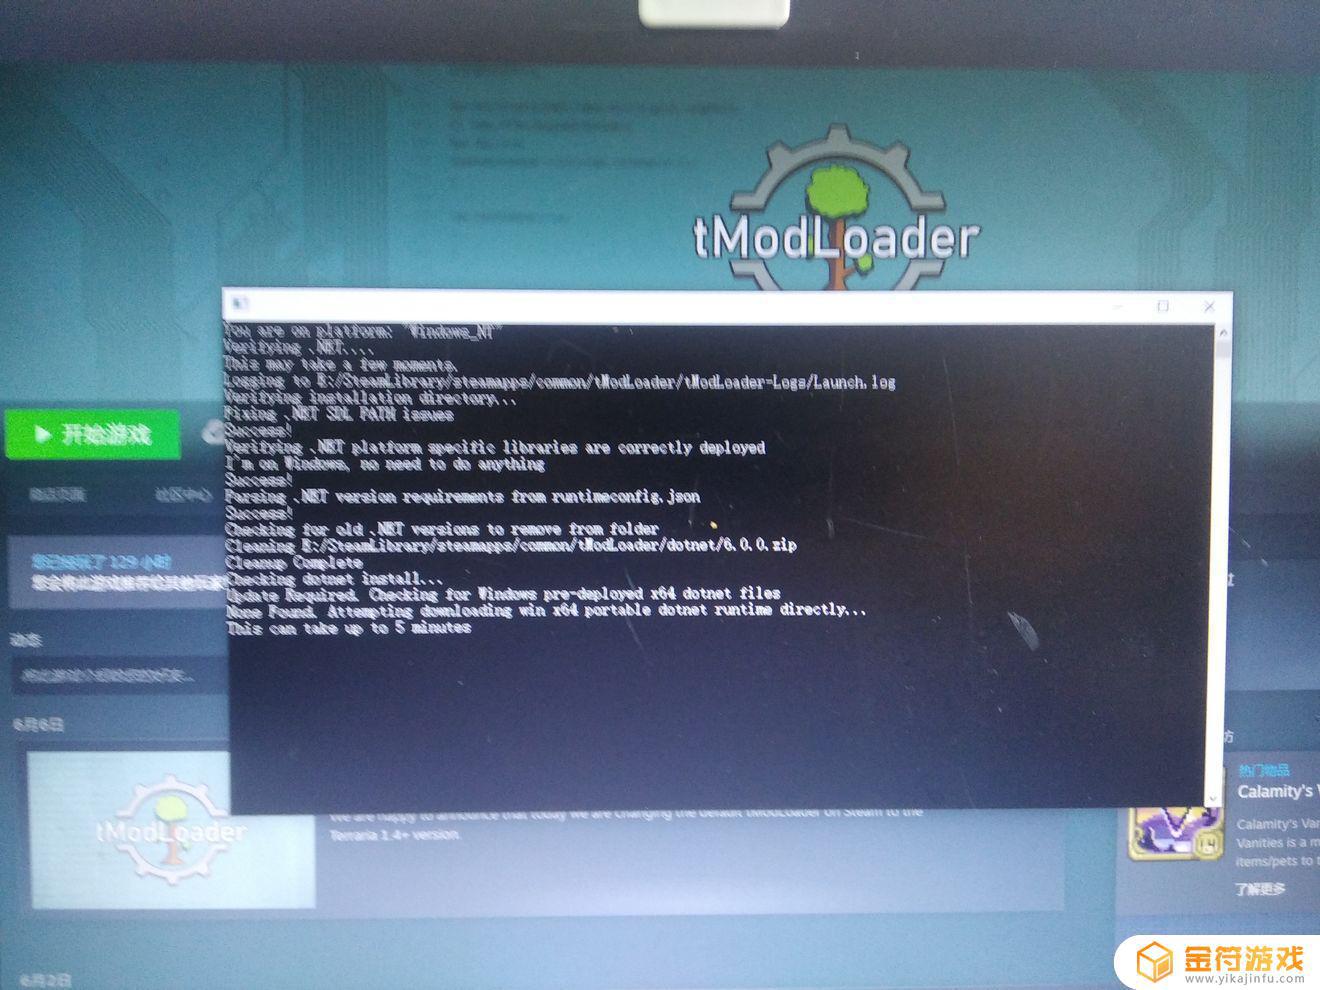 泰拉瑞亚兄弟们为什么我电脑版tmodloader打不开了